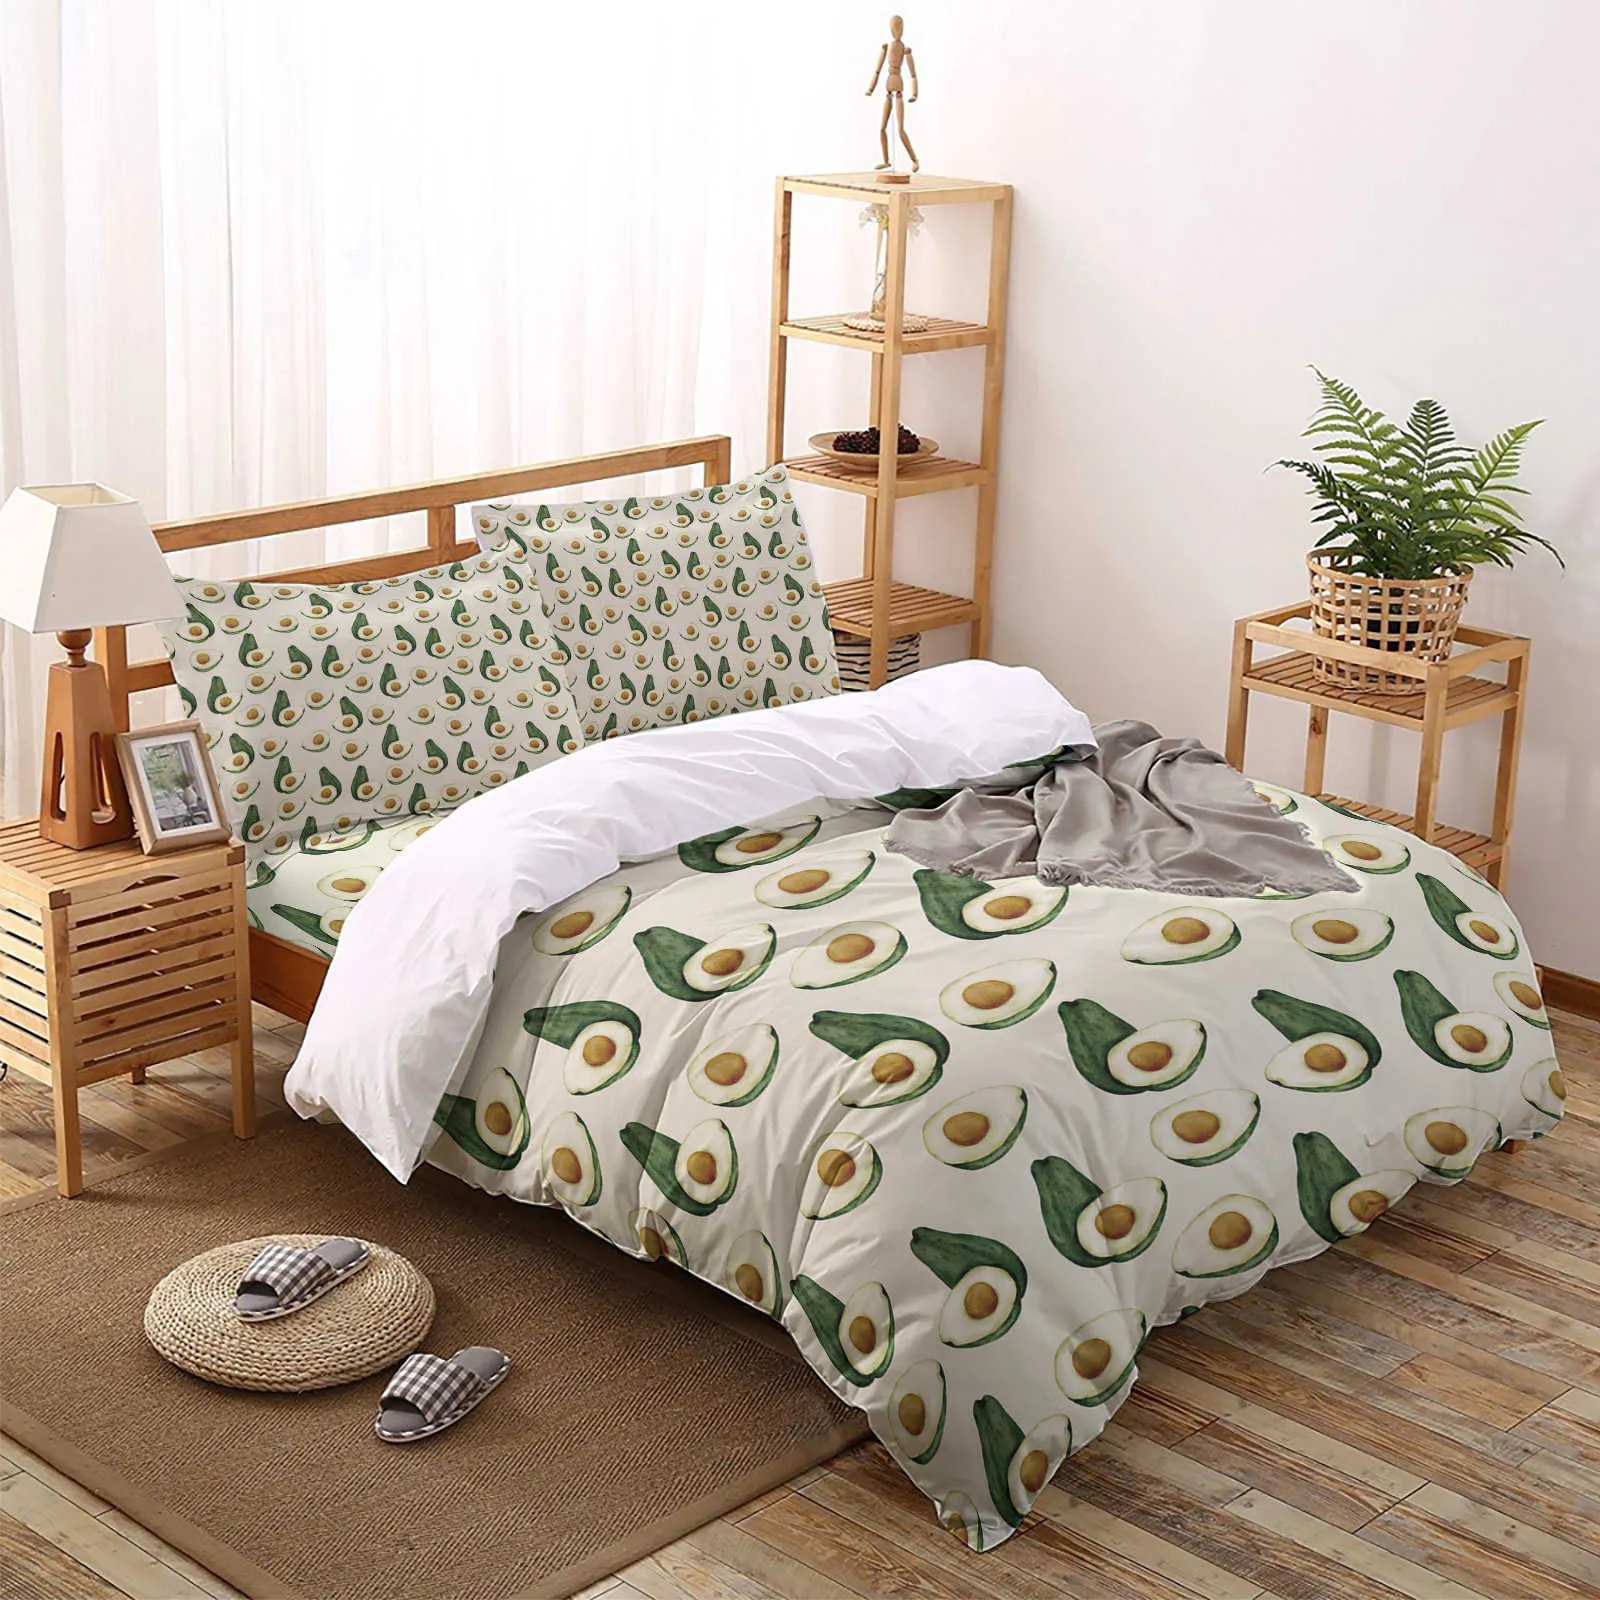 Наборы постельных принадлежностей сажают зеленые фрукты авокадо подмодея